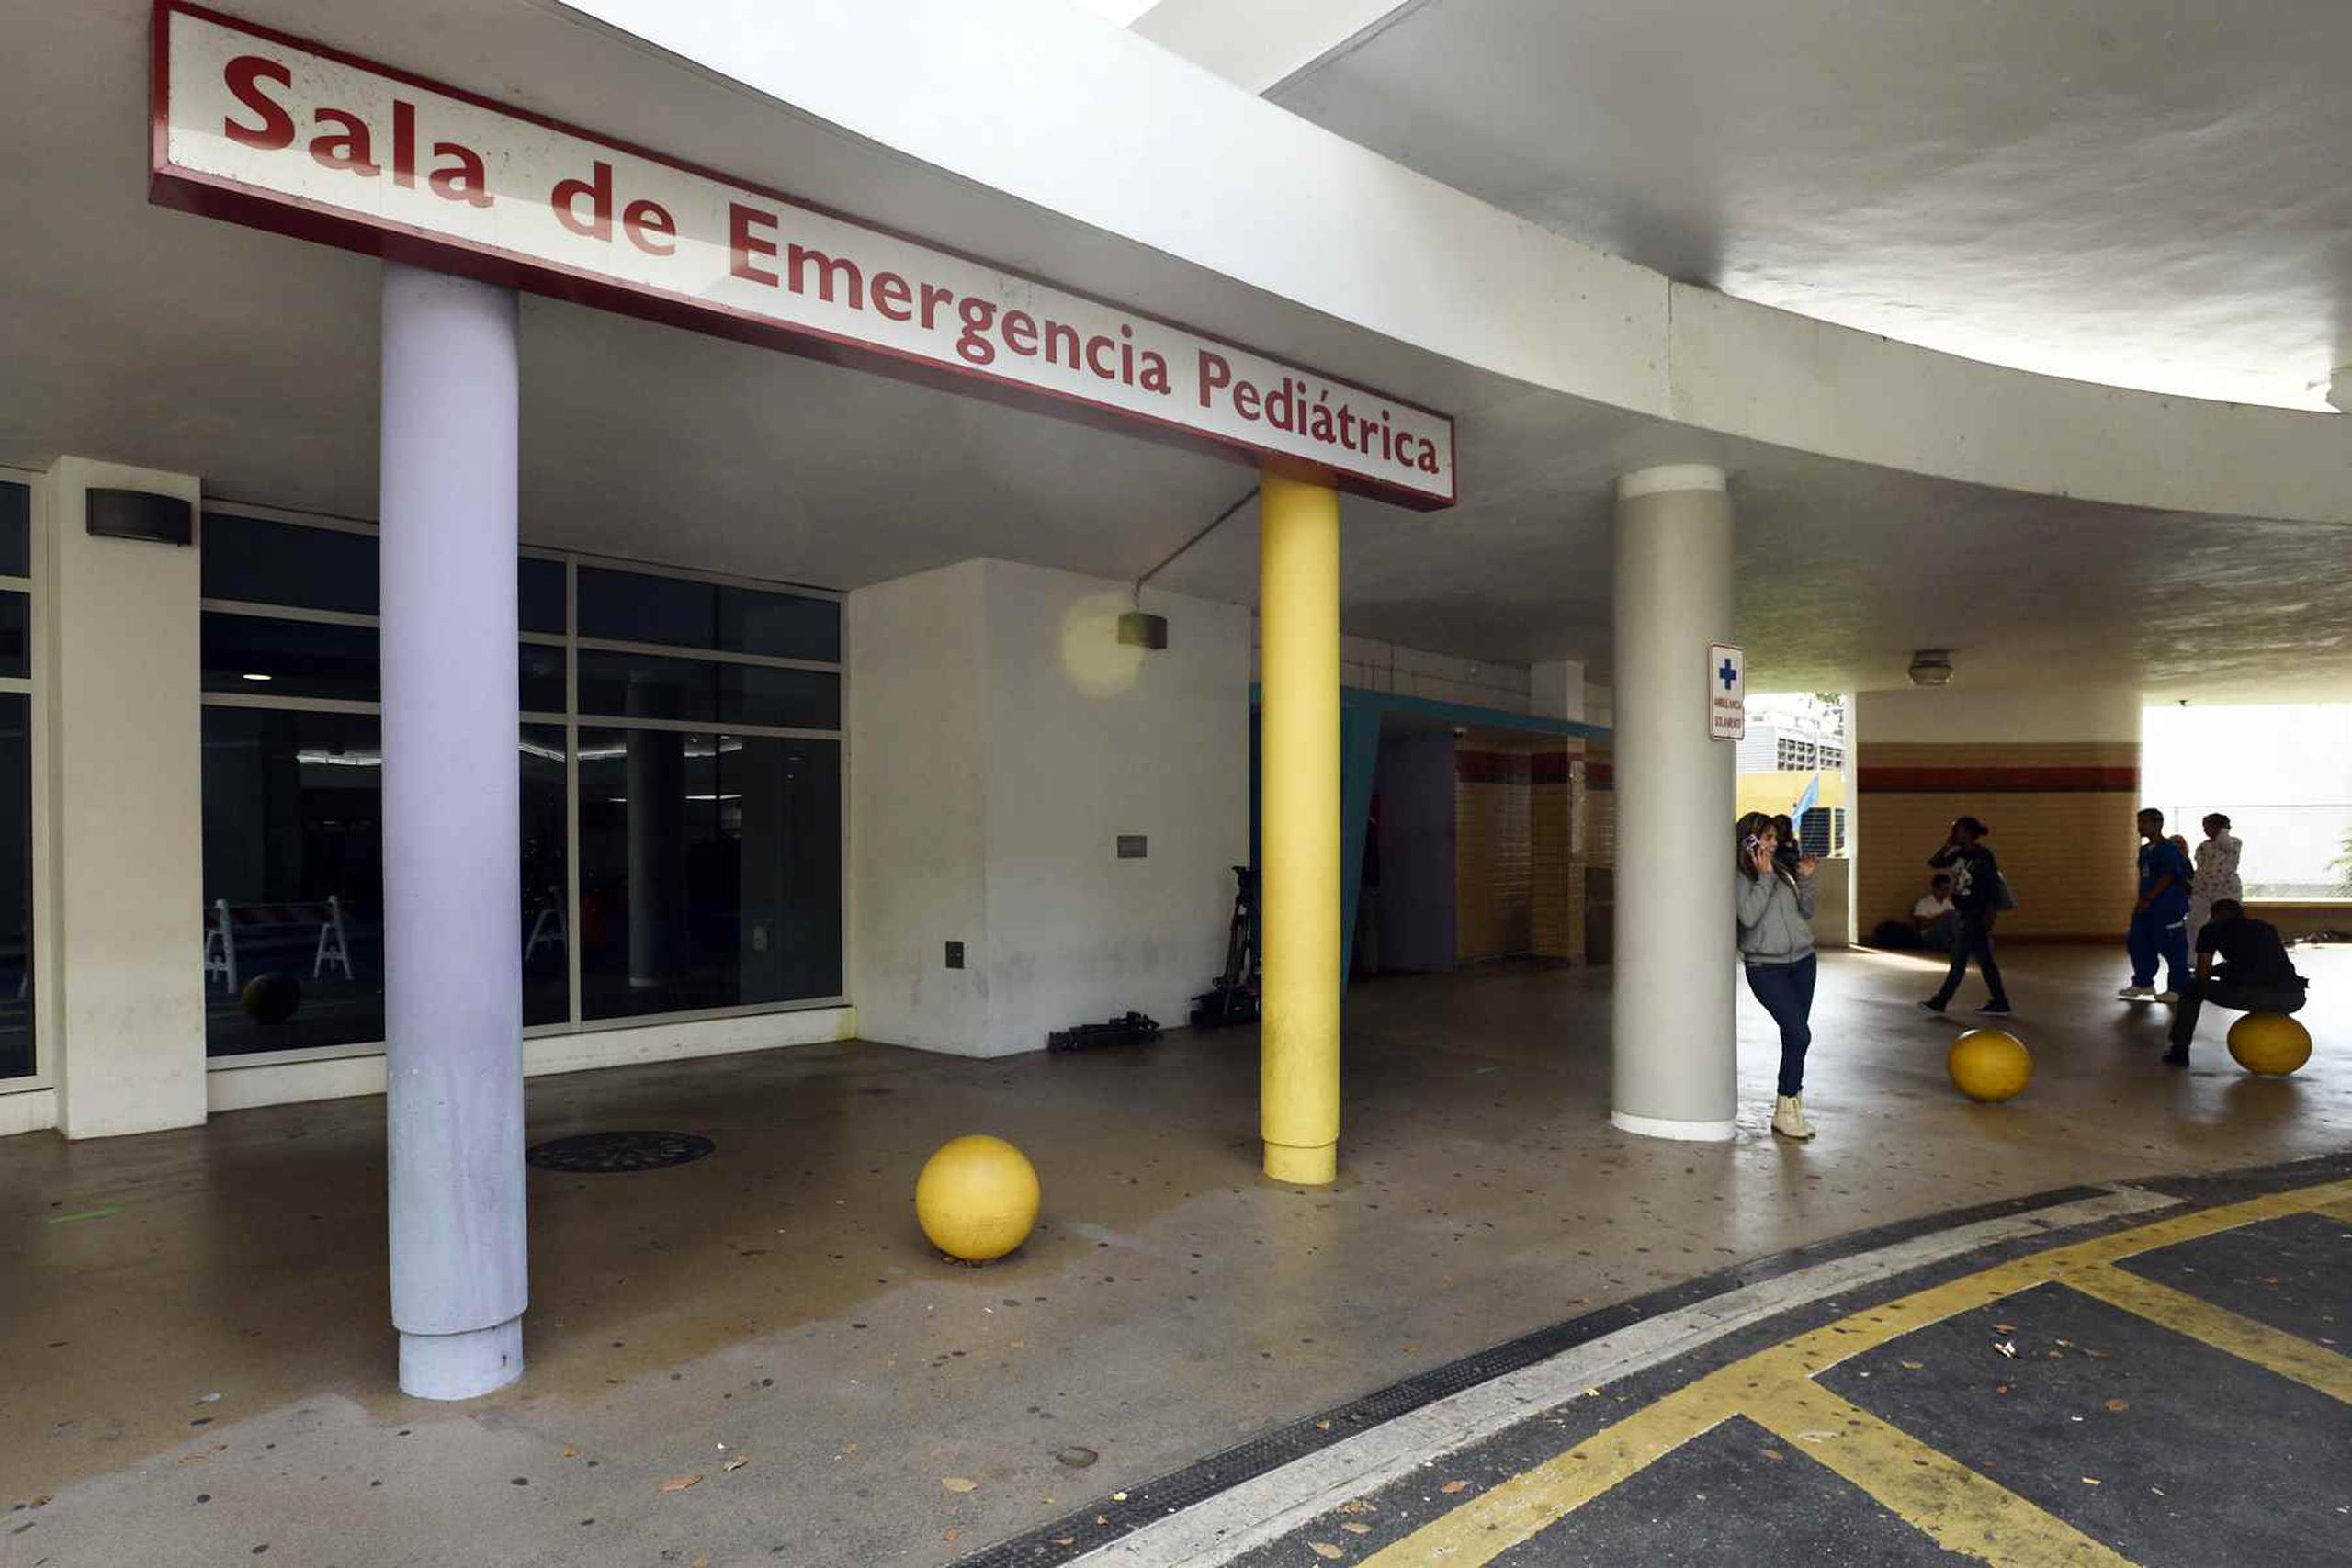 Los miembros de la Comisión cameral de Salud tenían previsto realizar un recorrido por el hospital, pero al momento de atender a la prensa todavía no habían inspeccionado la instalación.